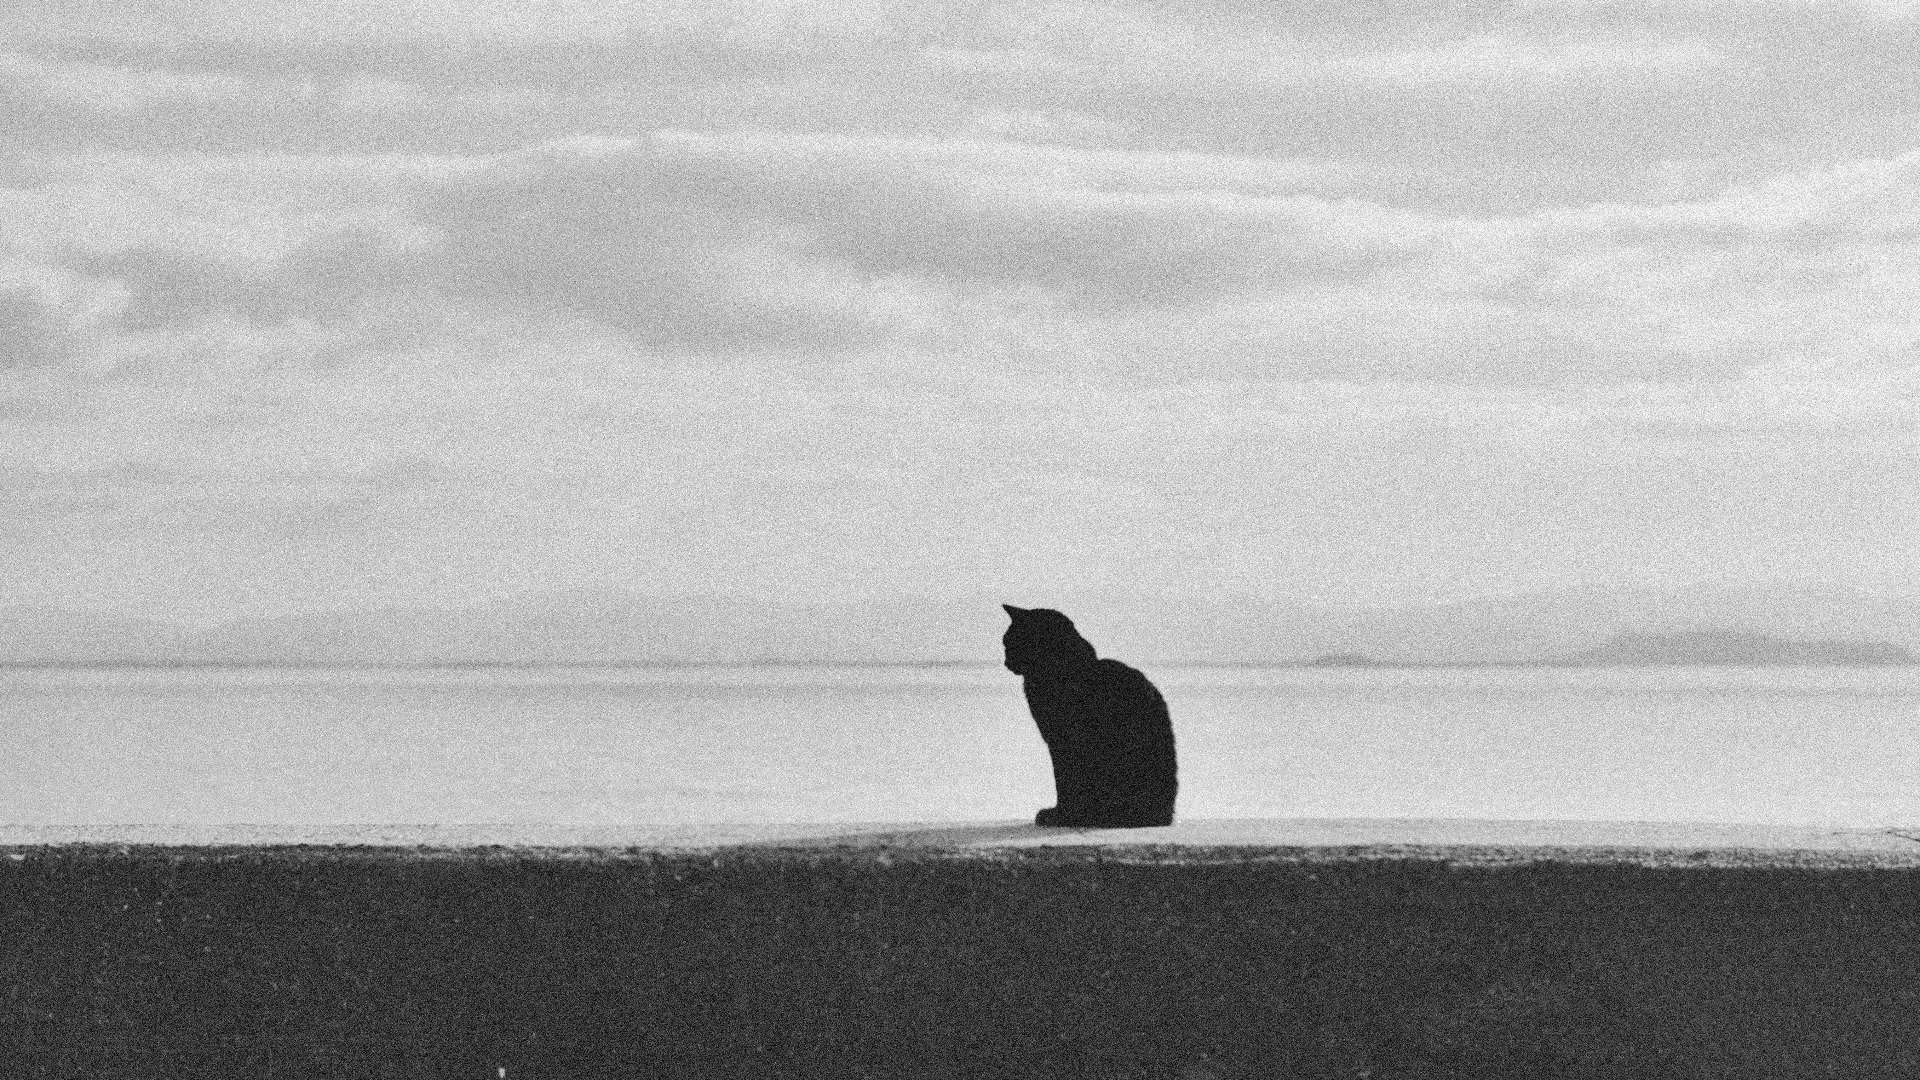 ぴあのくりーむが投稿したフォト 防波堤でのんびりされてる黒猫さん イラストと間違うぐらいき 19 05 24 13 05 37 Limia リミア